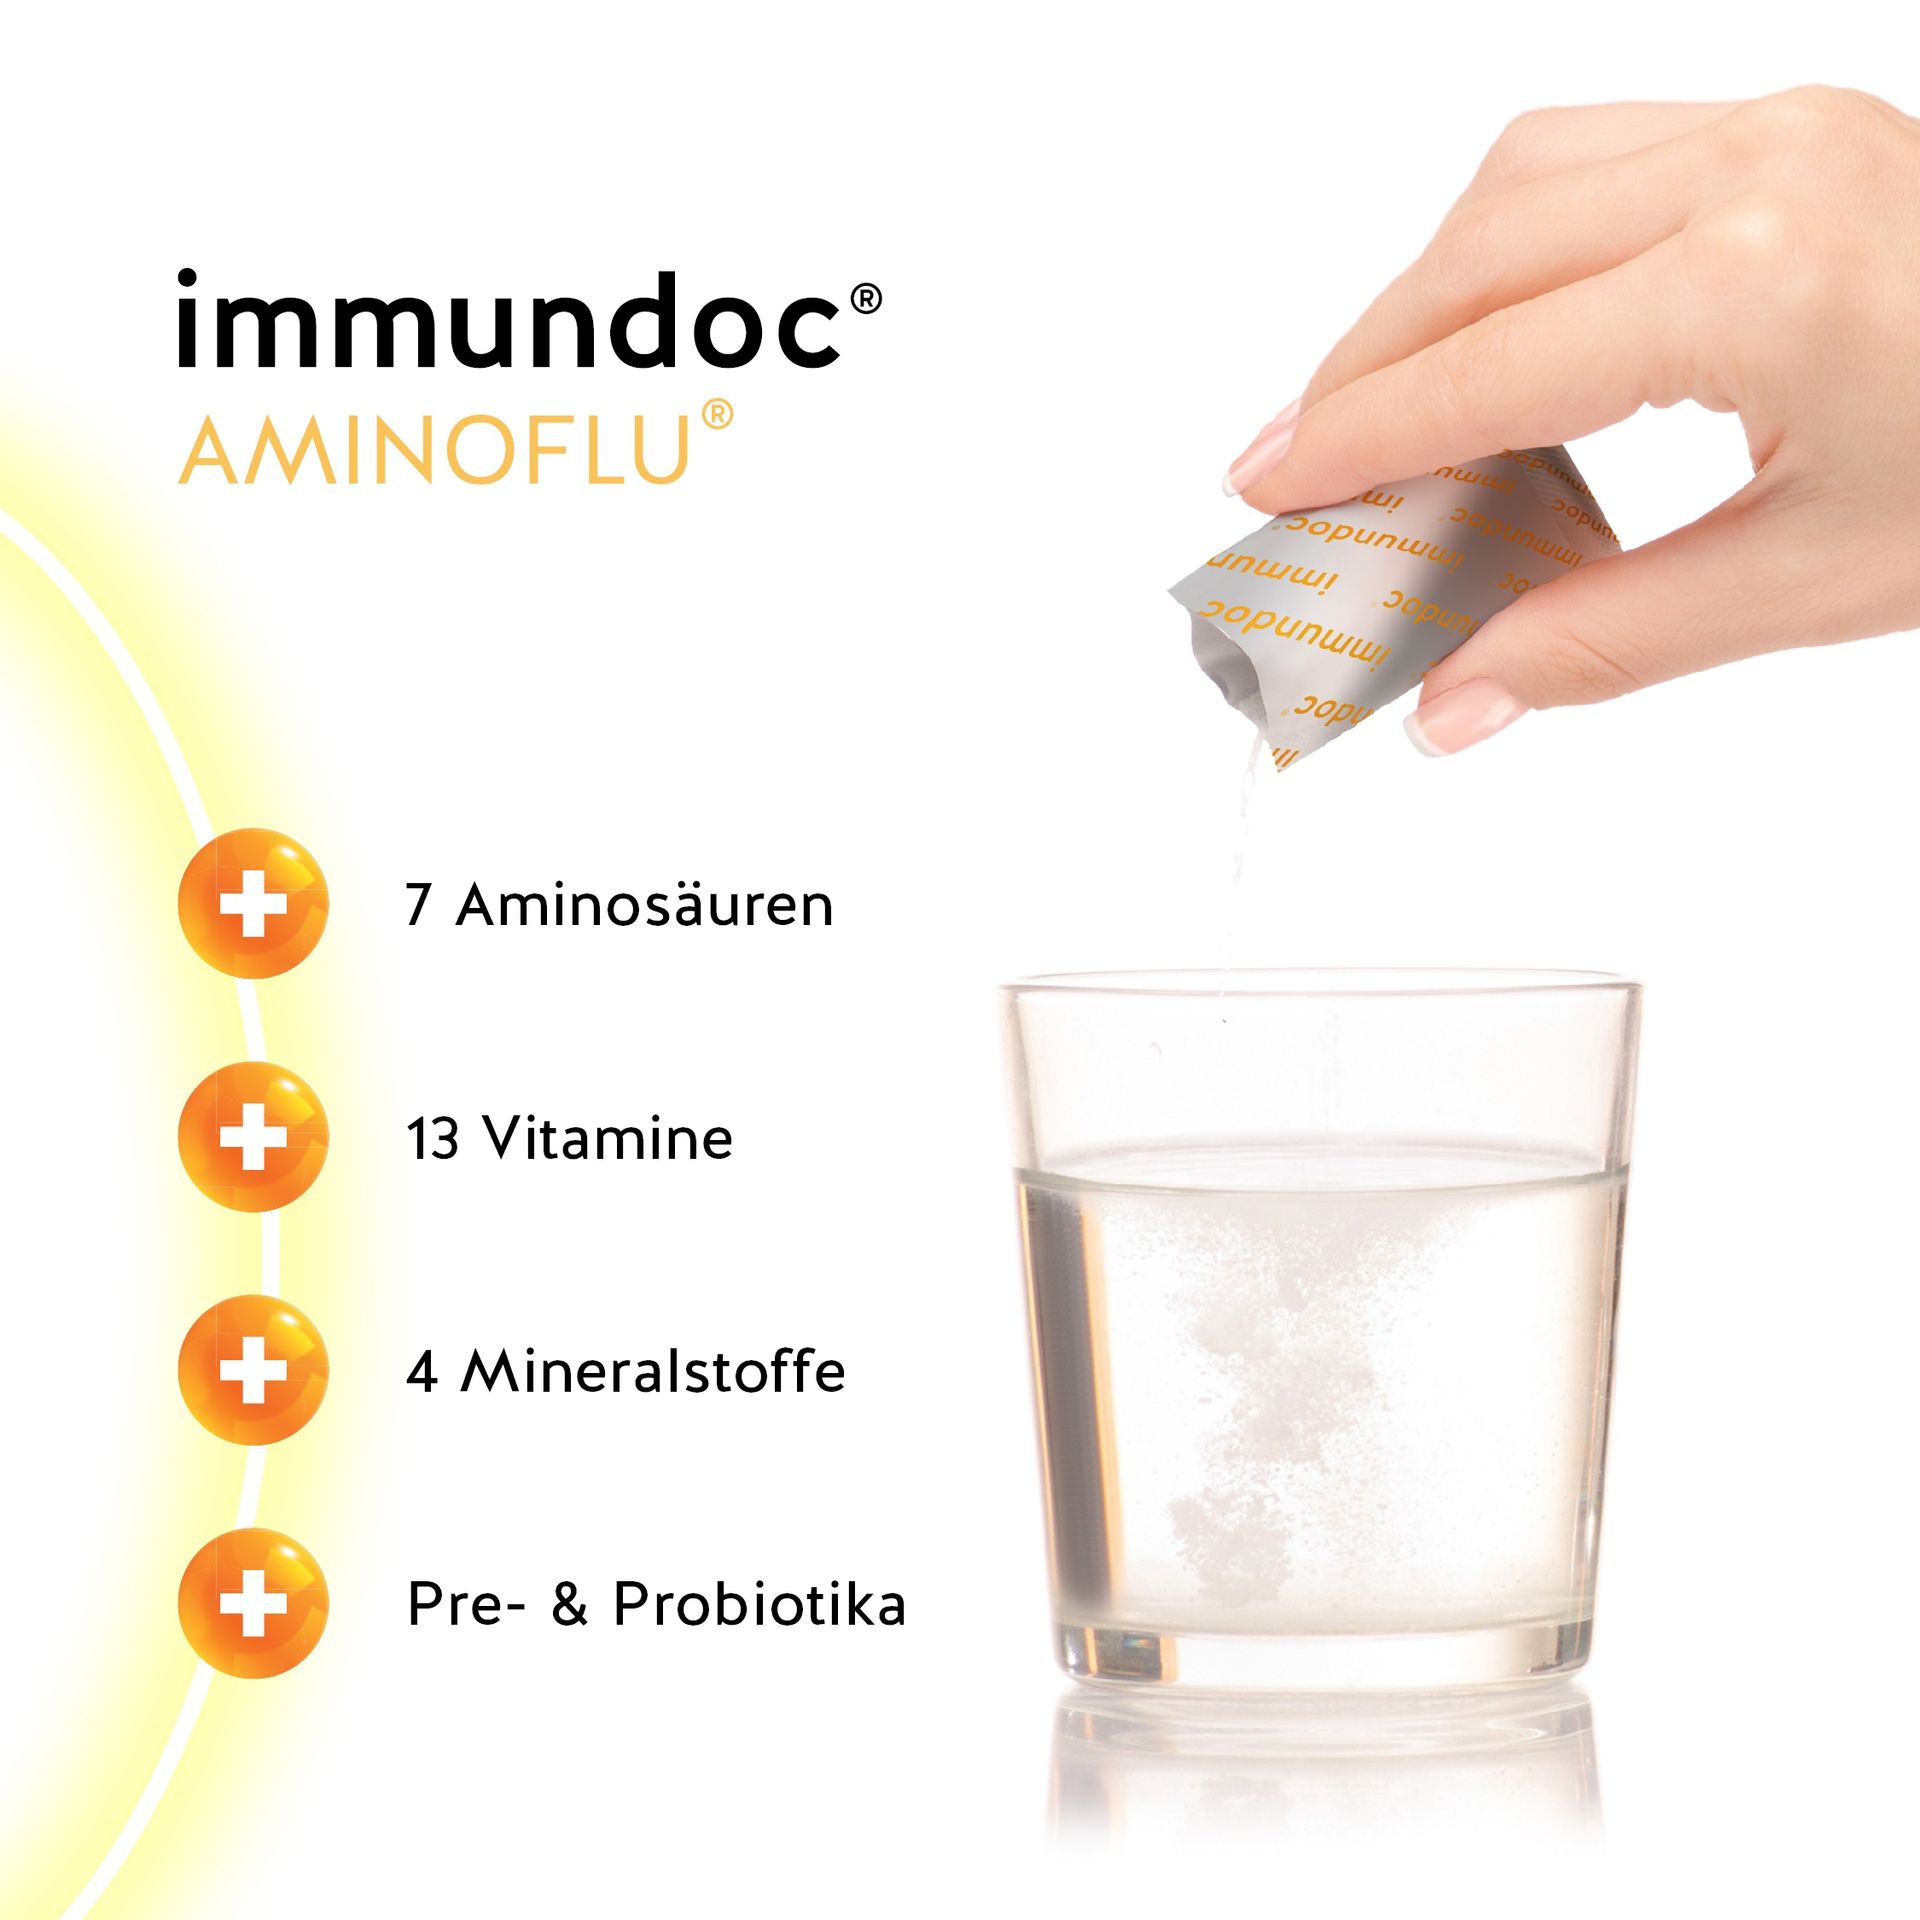 immundoc® DIREKT enthält viele Vitamine und wertvolle Pflanzenextrakte